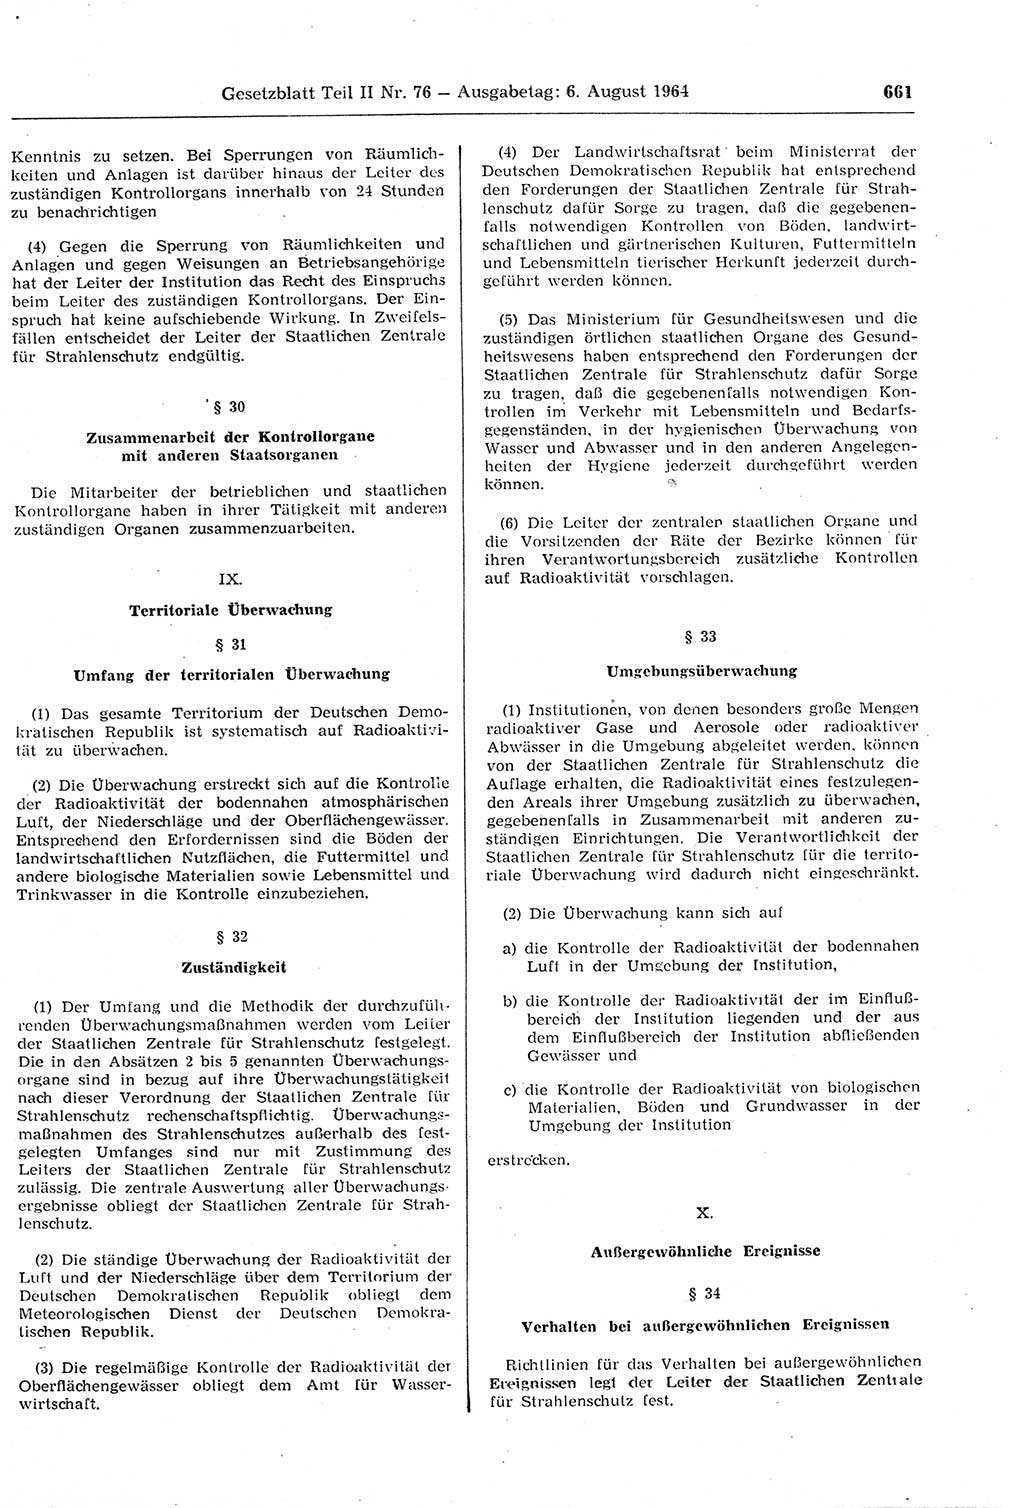 Gesetzblatt (GBl.) der Deutschen Demokratischen Republik (DDR) Teil ⅠⅠ 1964, Seite 661 (GBl. DDR ⅠⅠ 1964, S. 661)